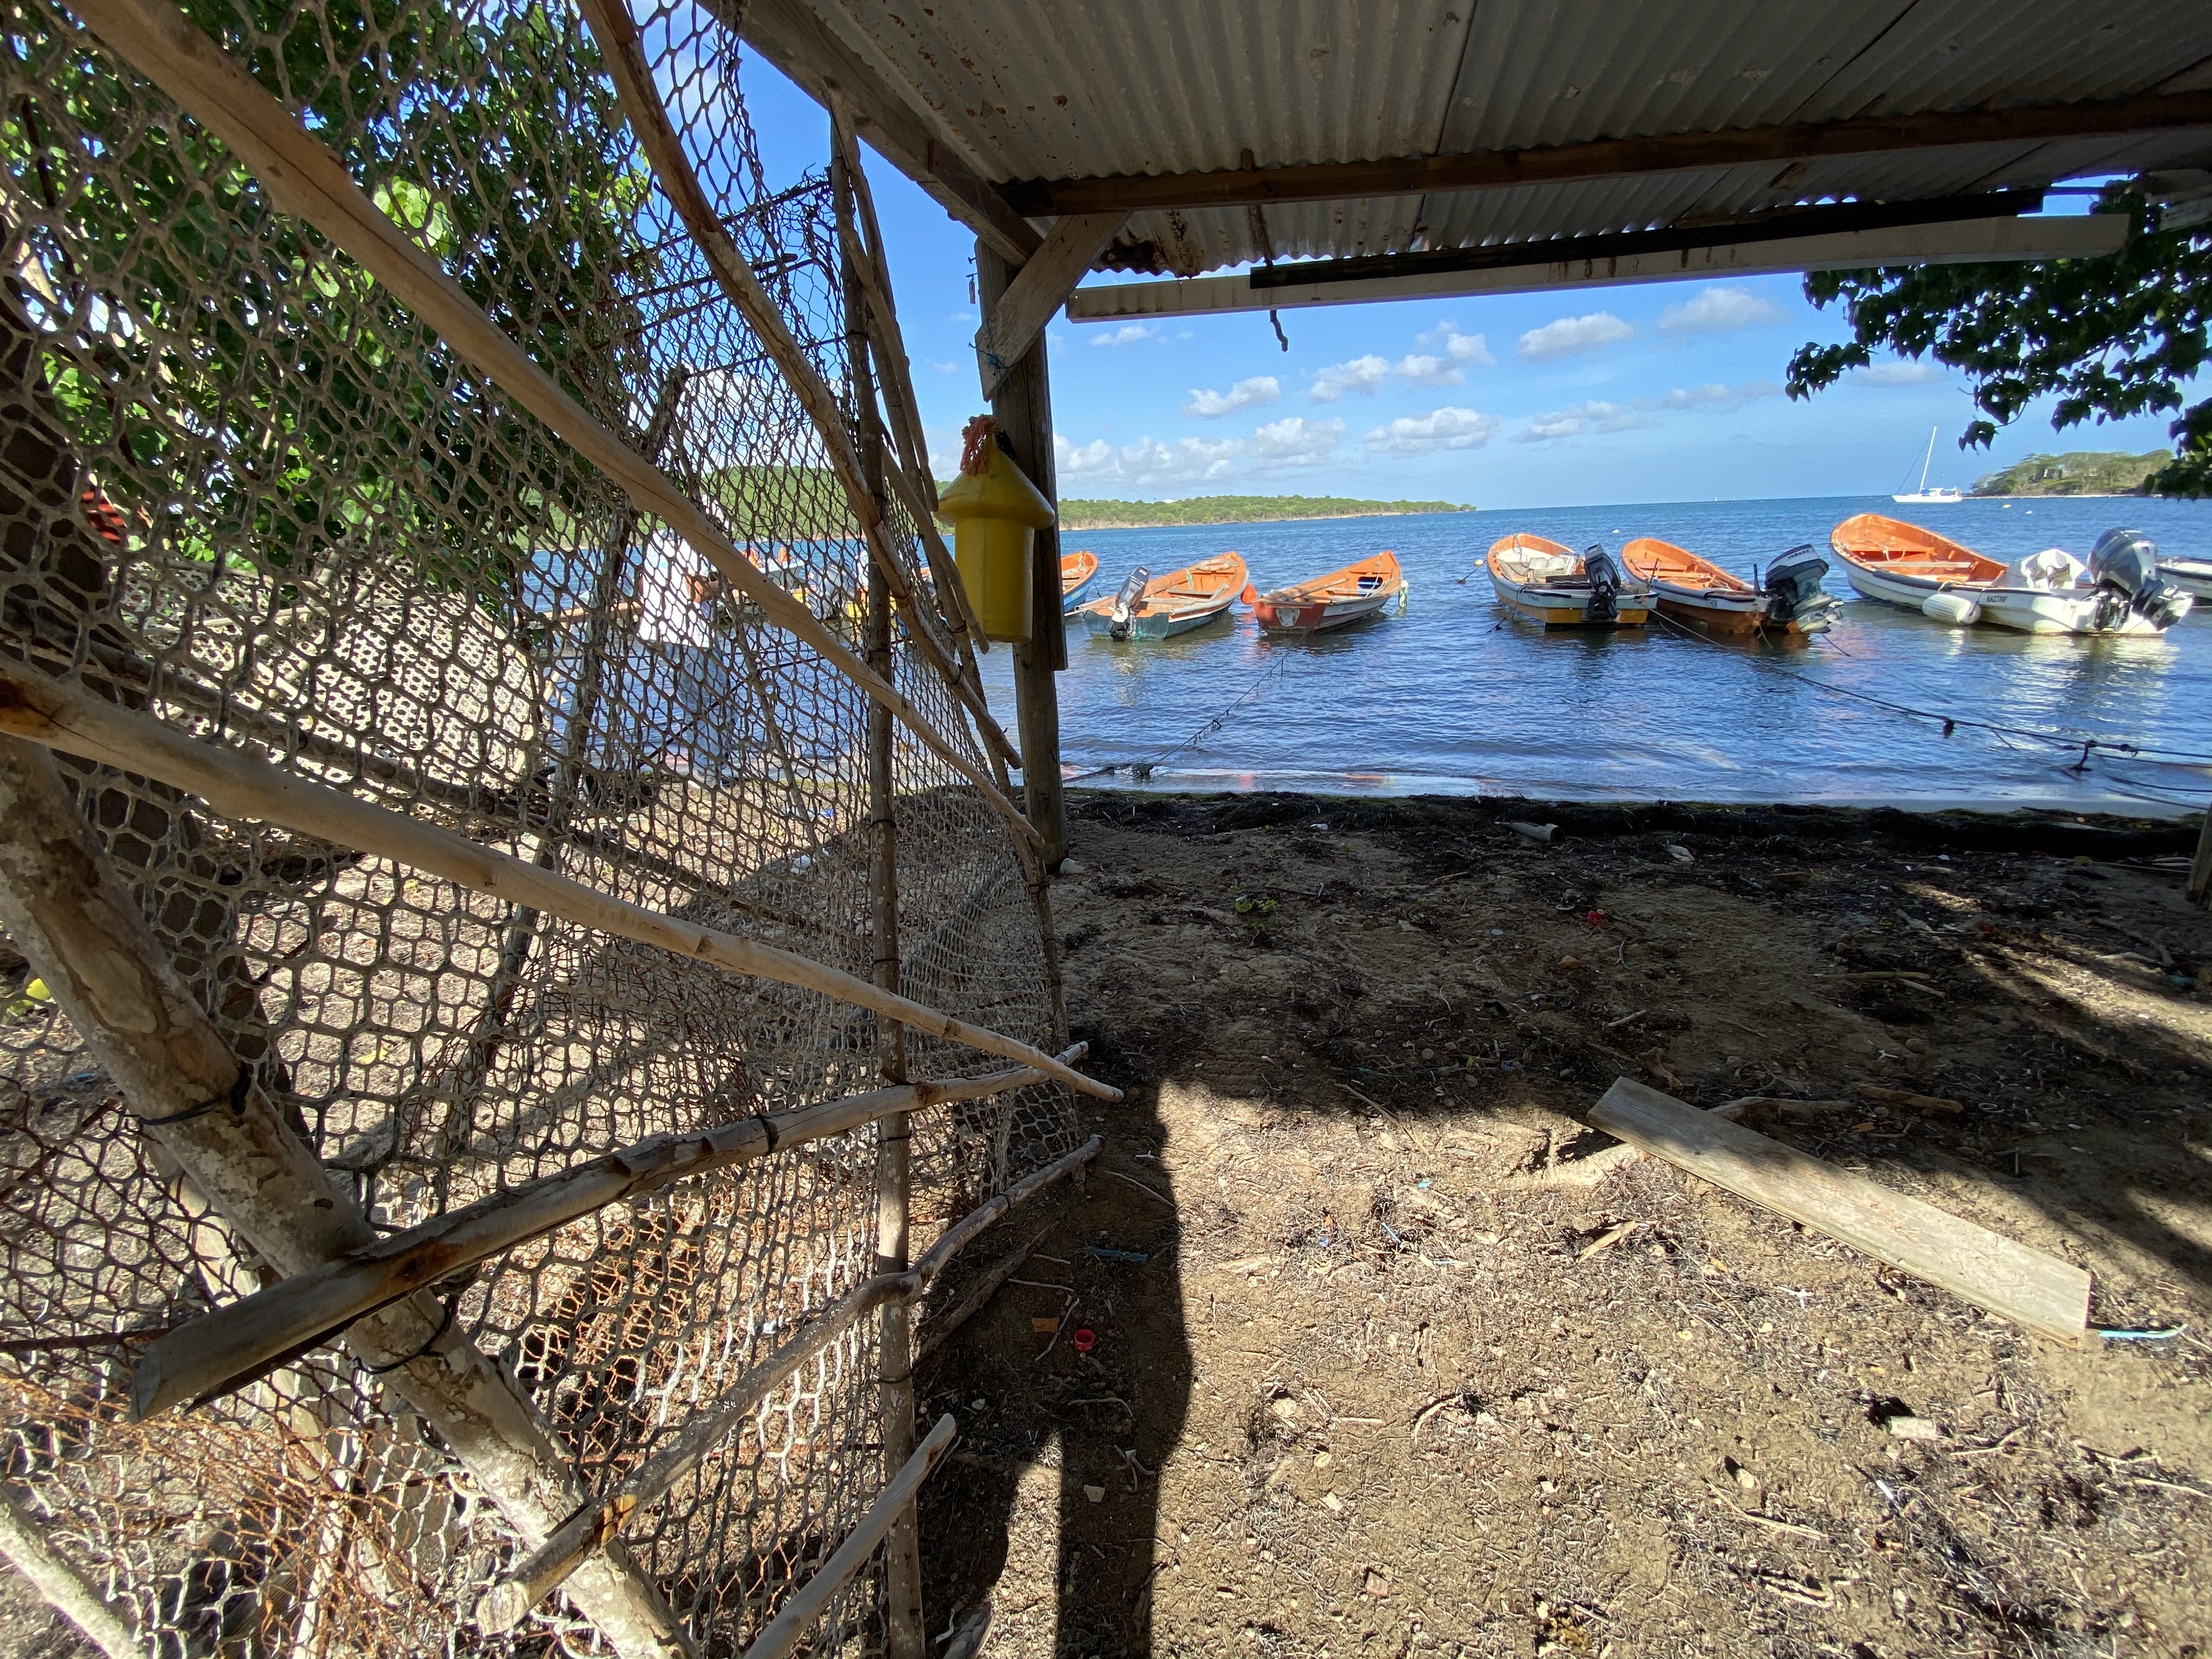     Les pêcheurs de Martinique victimes de vols de moteurs sur leurs bateaux

